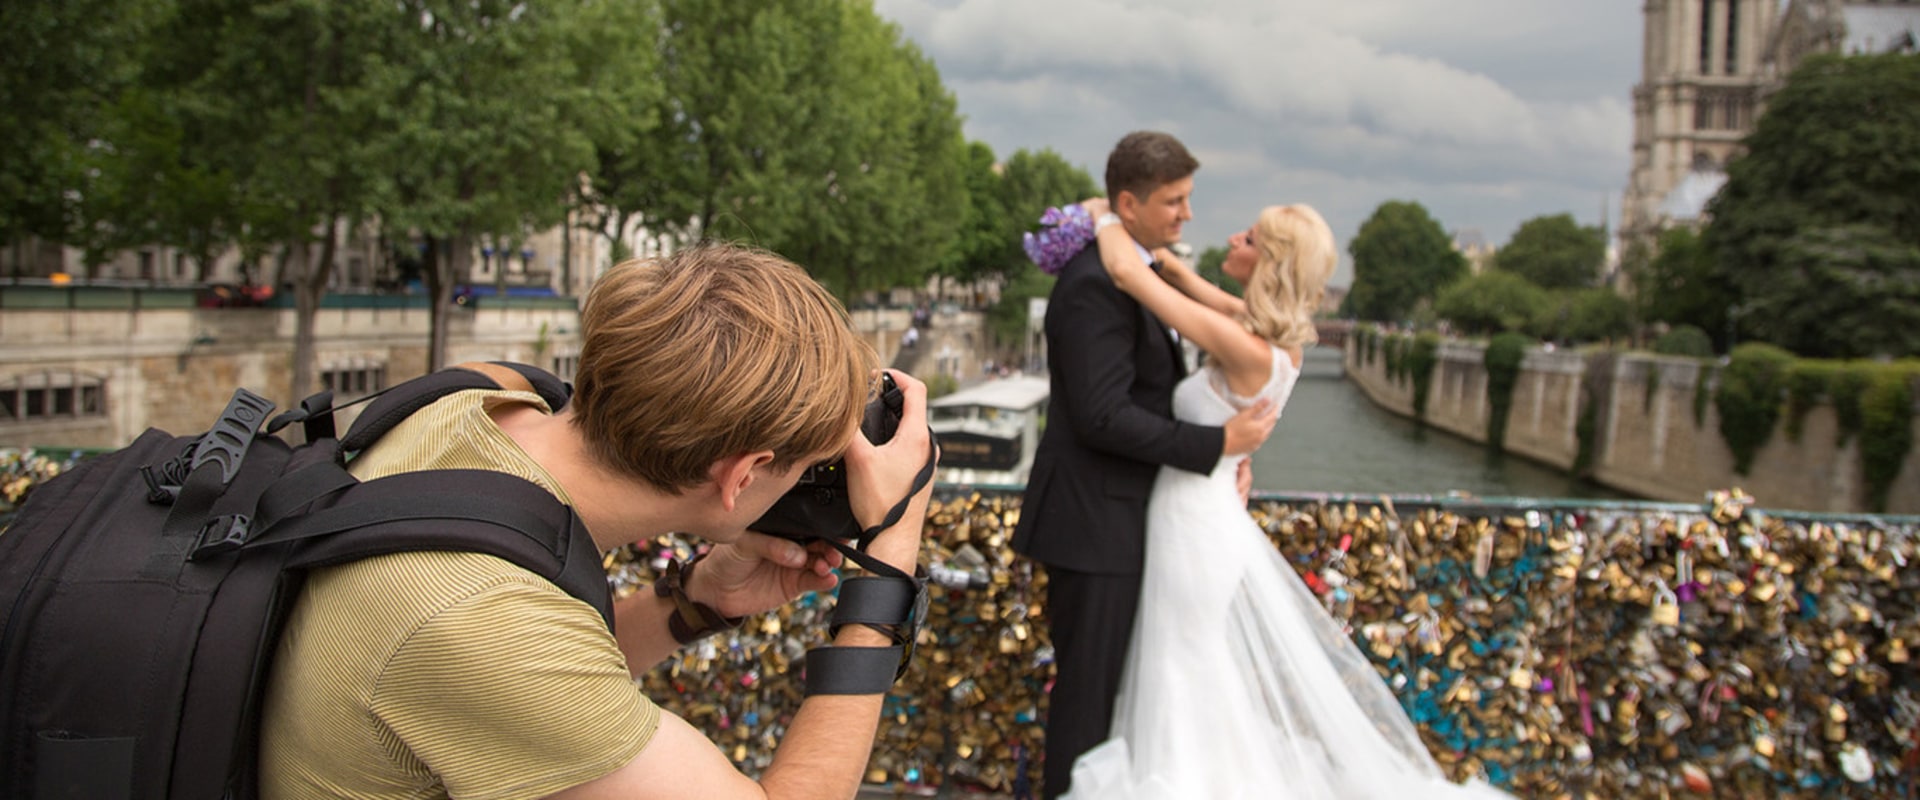 Tenga en cuenta la hora del día al elegir un lugar para fotografiar bodas